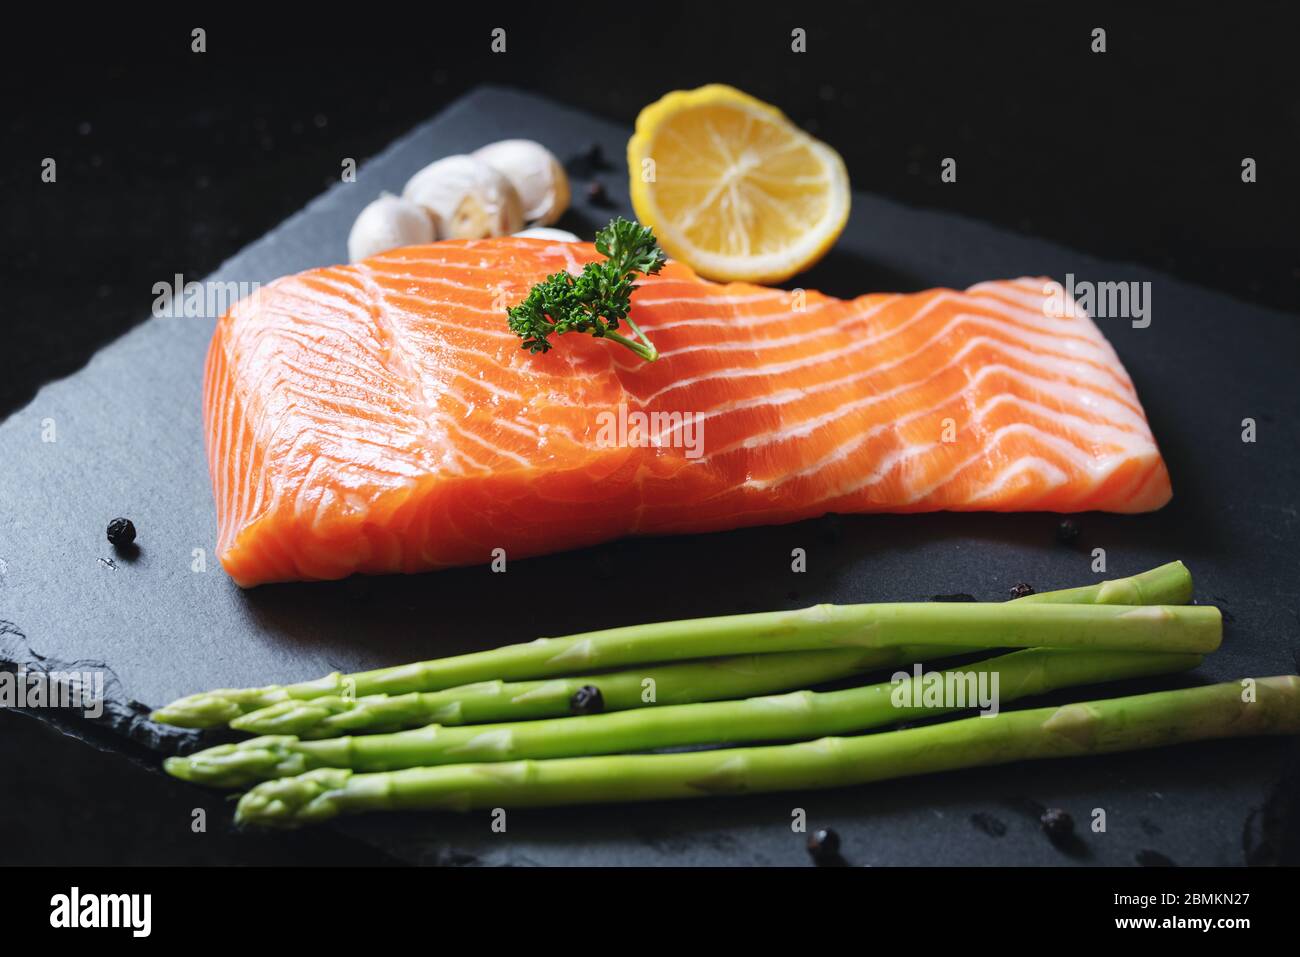 Tranche de saumon frais cru avec herbes et ingrédients, sur plaque d'ardoise noire. Filet de saumon Banque D'Images